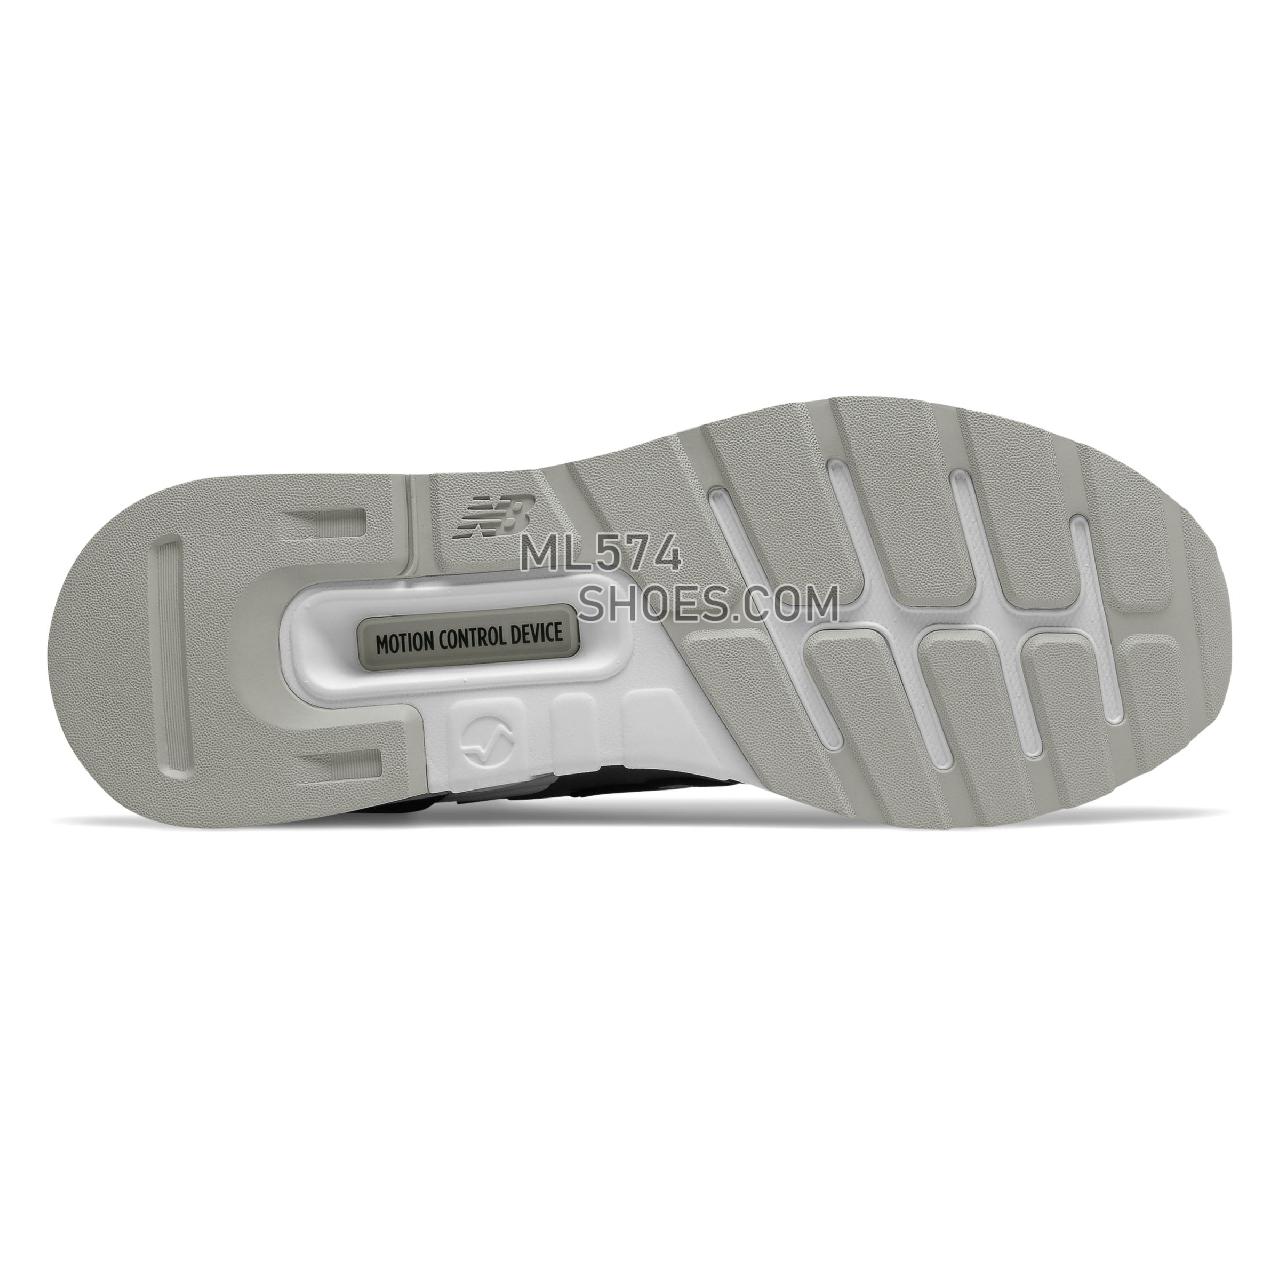 New Balance 997 Sport - Men's Sport Style Sneakers - Castlerock with Black - MS997LOK